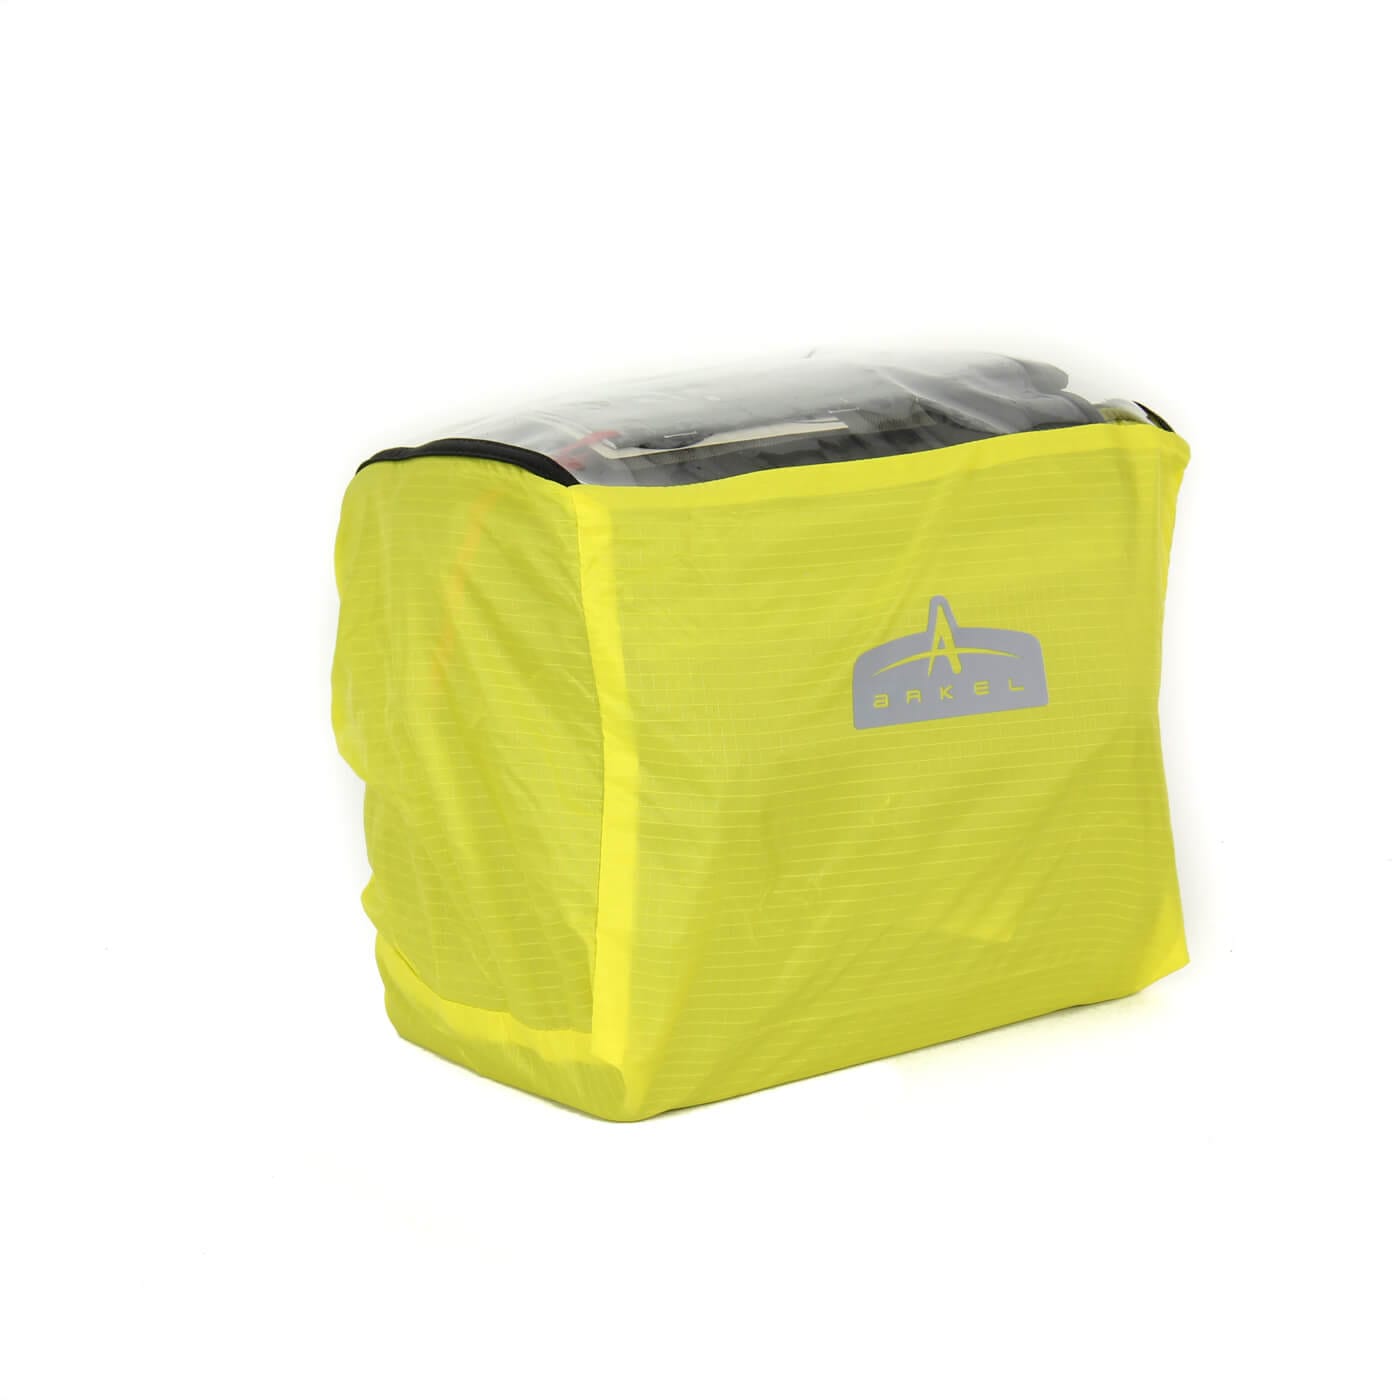 Arkel Bike Bags Waterproof Rain Covers